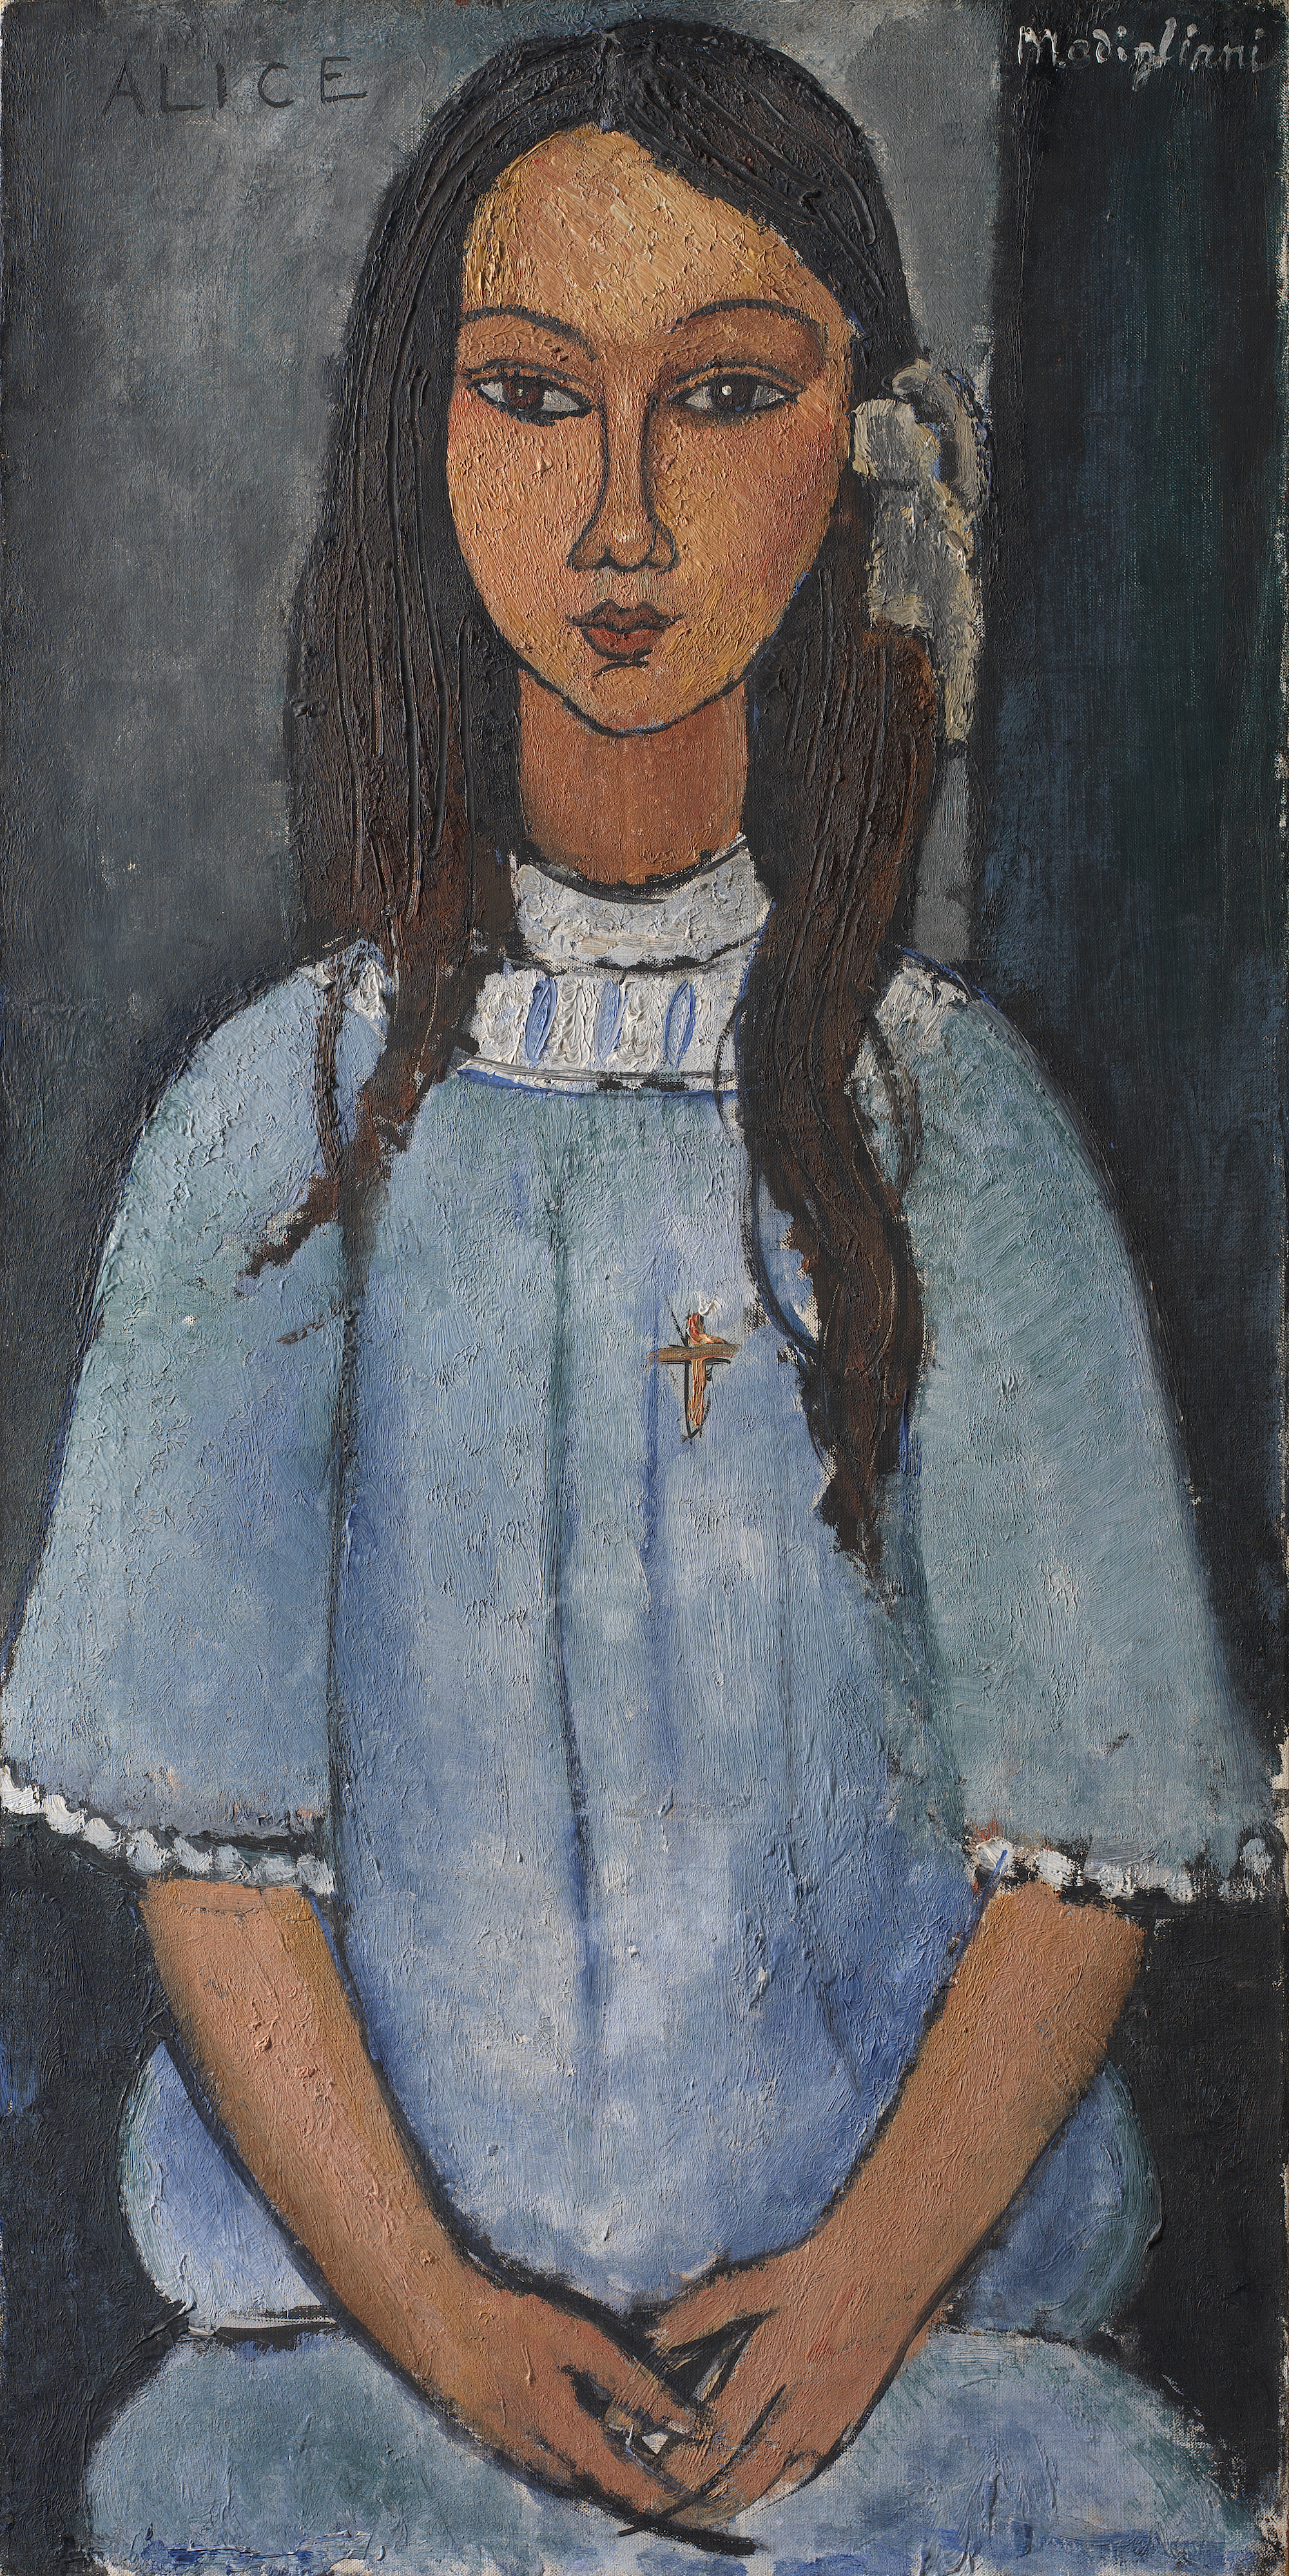 Alice by Amedeo Modigliani - cca. 1918 - - 